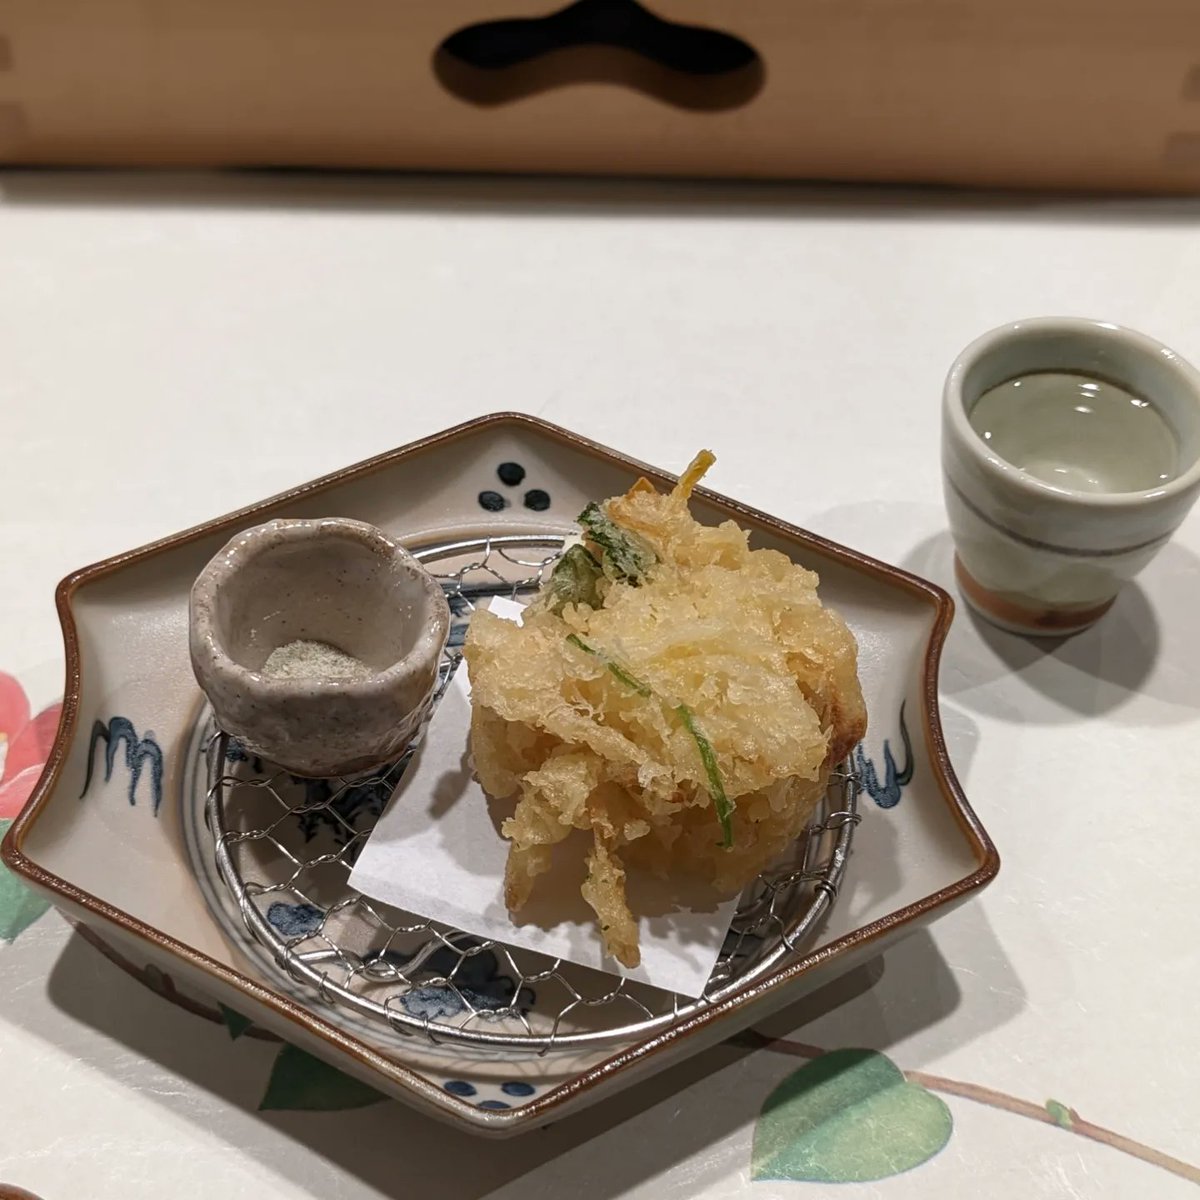 test ツイッターメディア - 夕食の日本酒のサービスは国士無双。
止肴は蟹のグラタン、北海道産のチーズサラダ、貝のかき揚げから一品。
日本酒があるのでかき揚げ。昆布塩でいただきました😋 https://t.co/SYeJ23eQCL